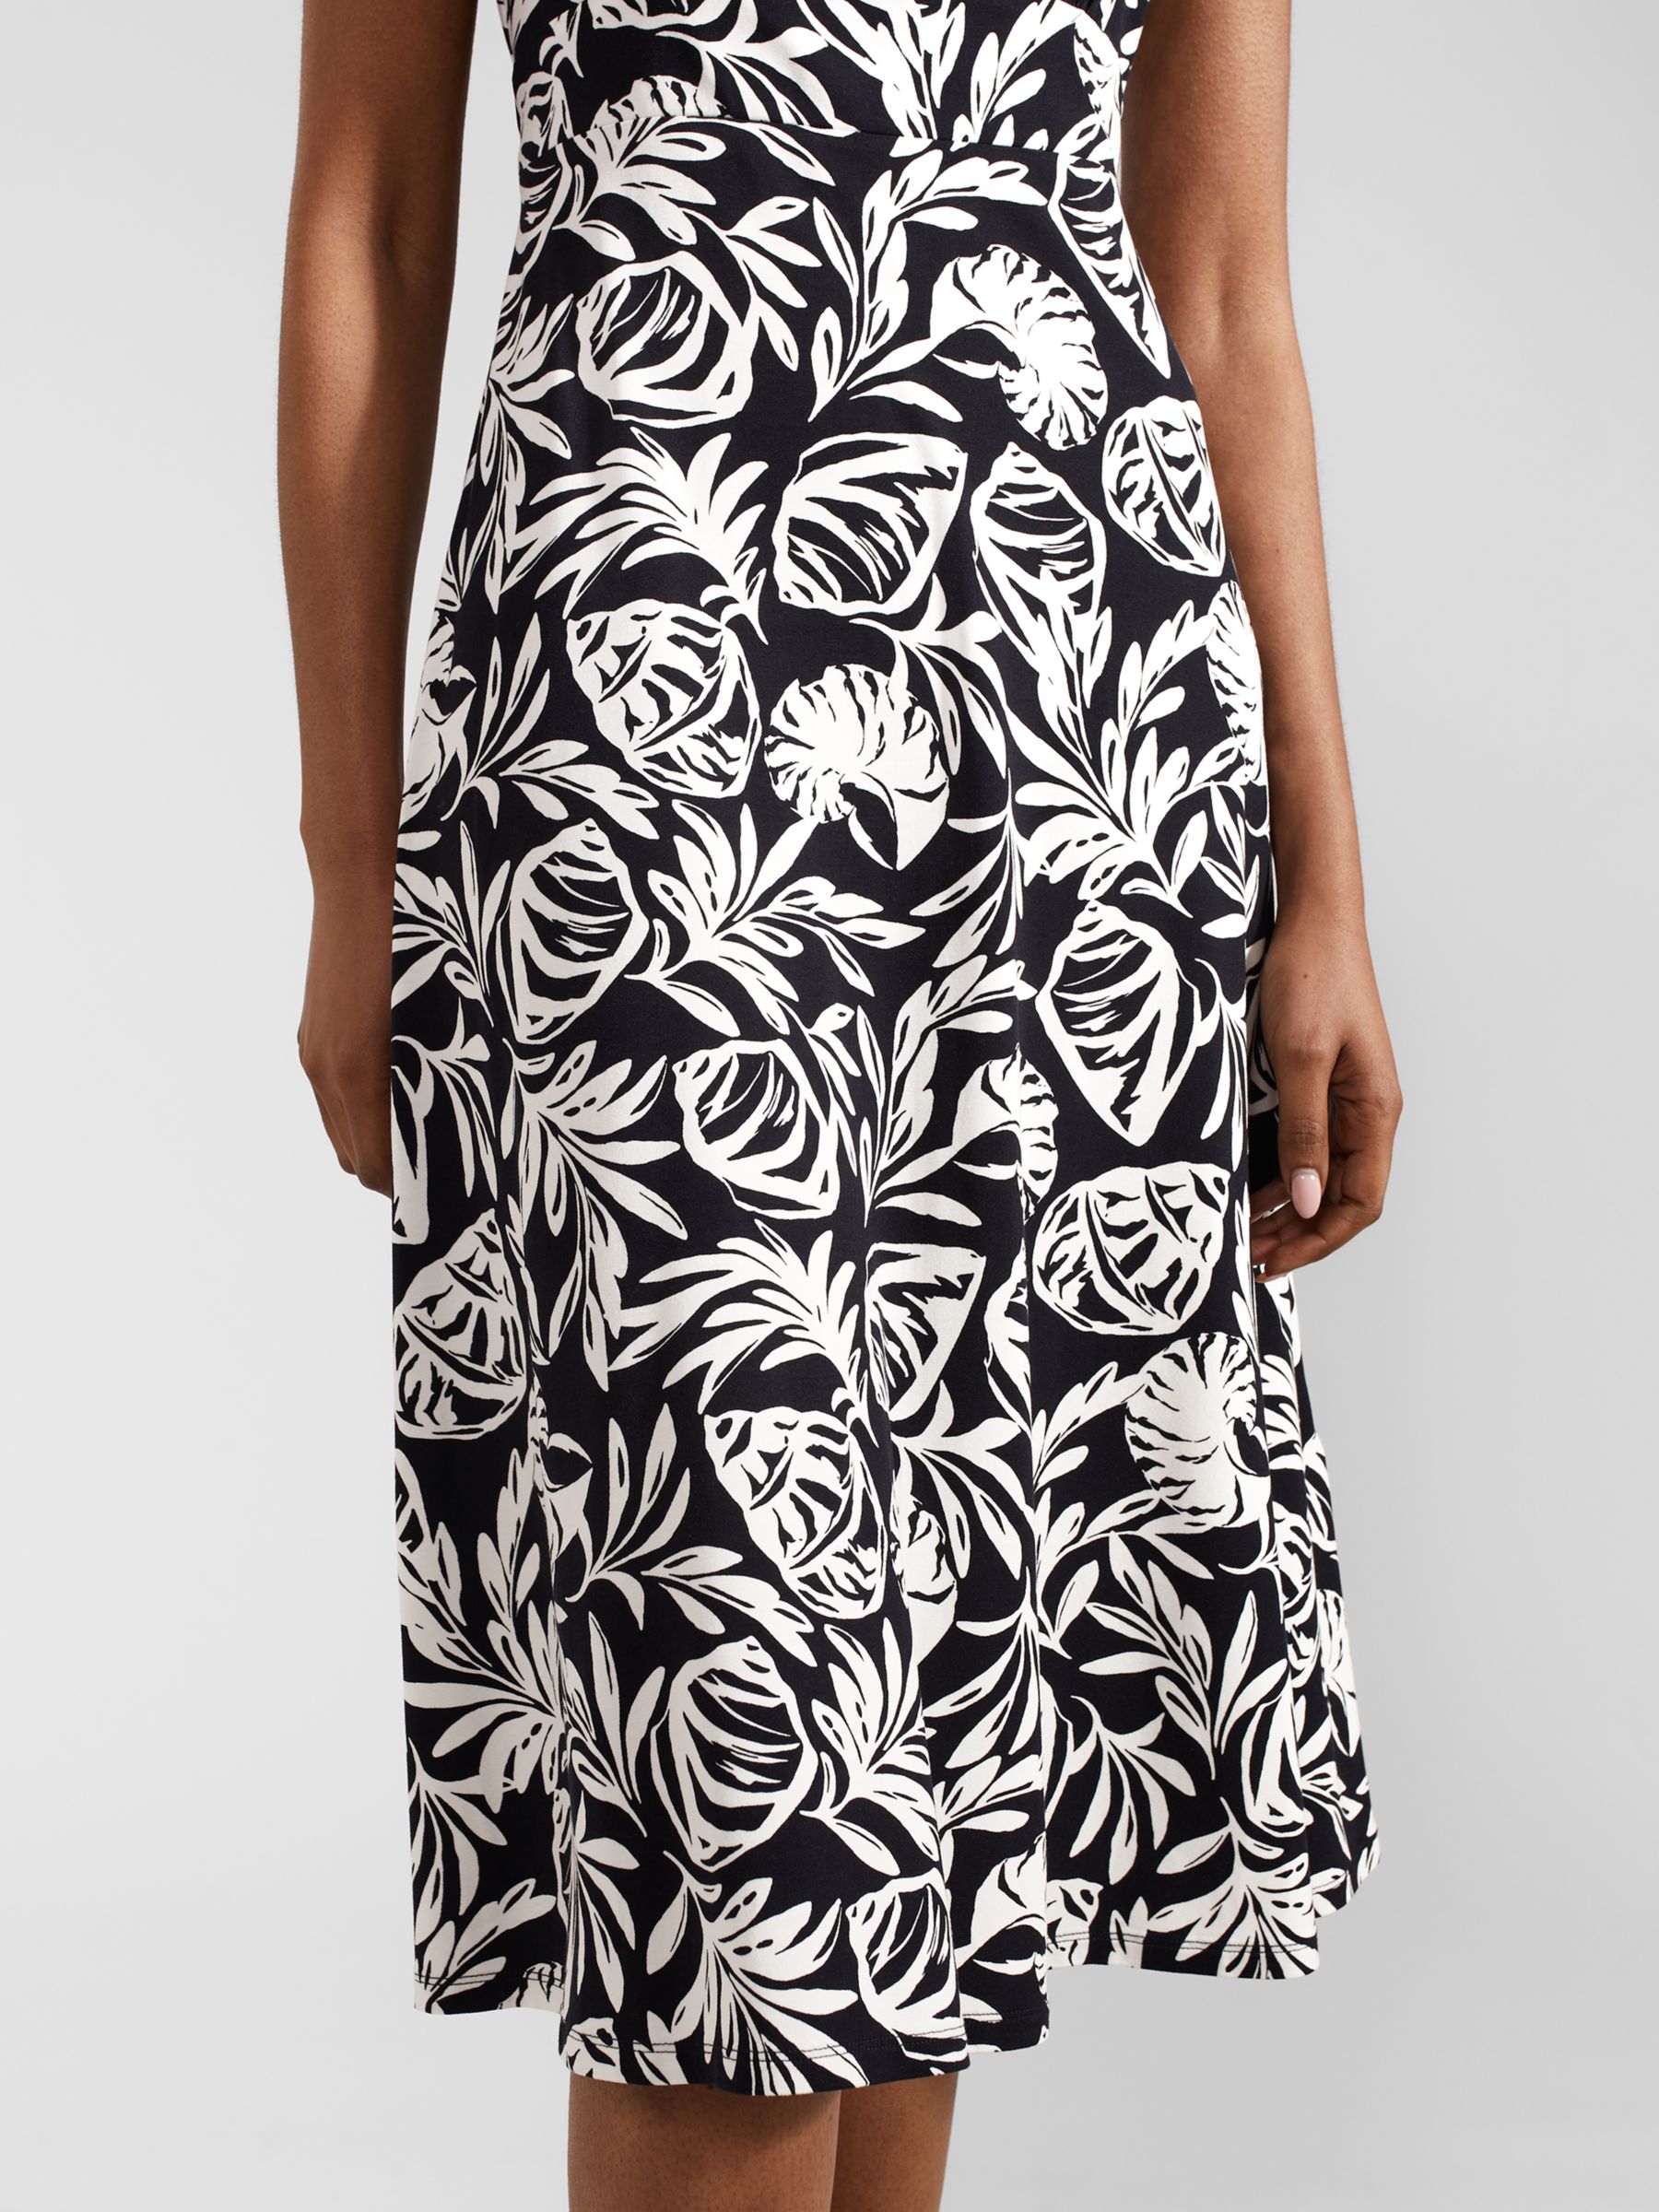 Hobbs Marylise Seashell Print Jersey Midi Dress, Navy/Ivory, 12